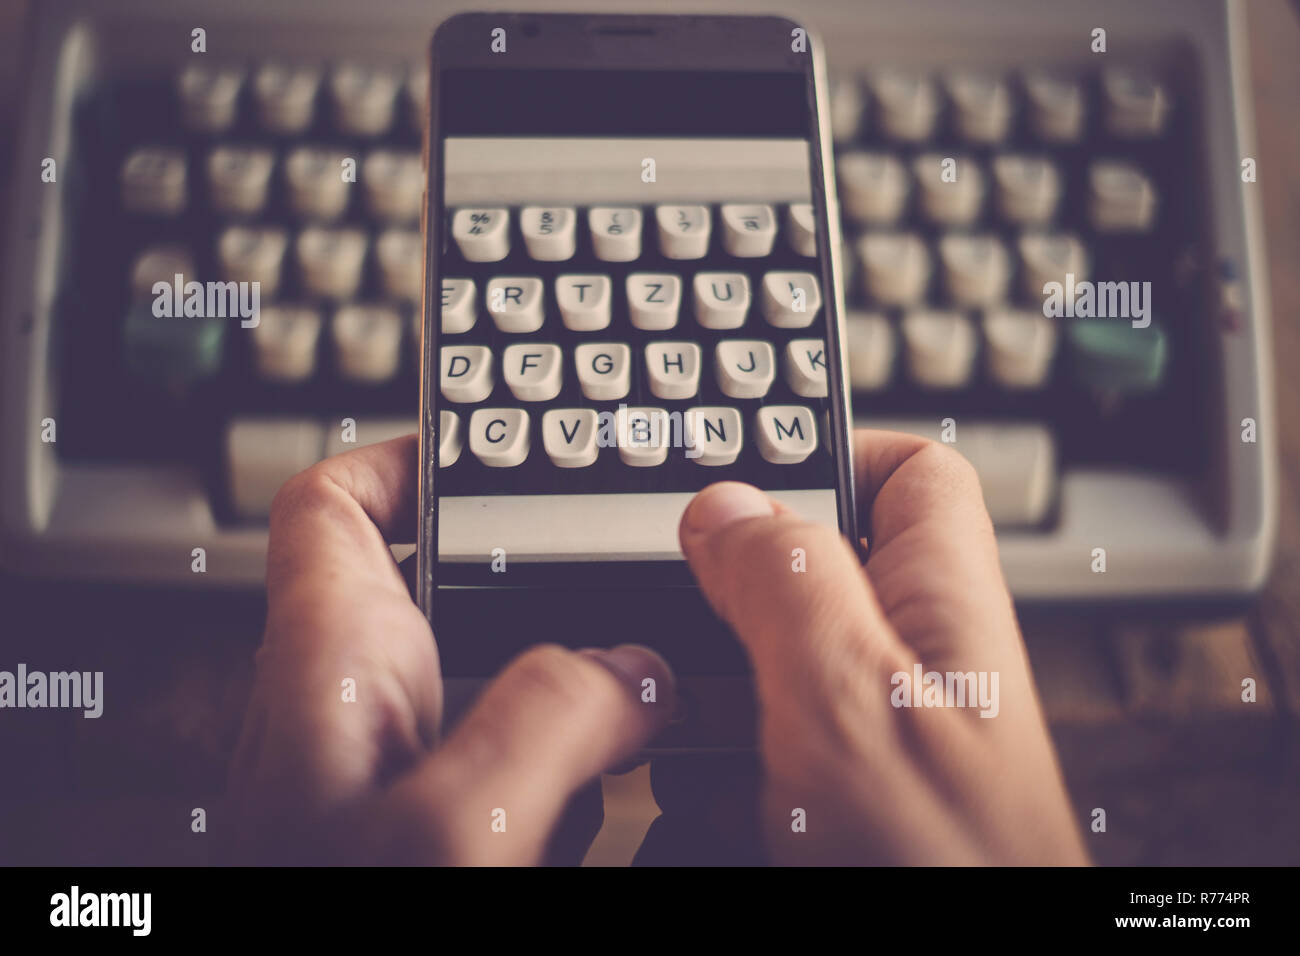 Tipo di concetto Scrivi immagine con macchina da scrivere antica e moderna telefono mobile rispetto allo stesso immagine - antica e tecnologia con lettere e il messaggio Foto Stock